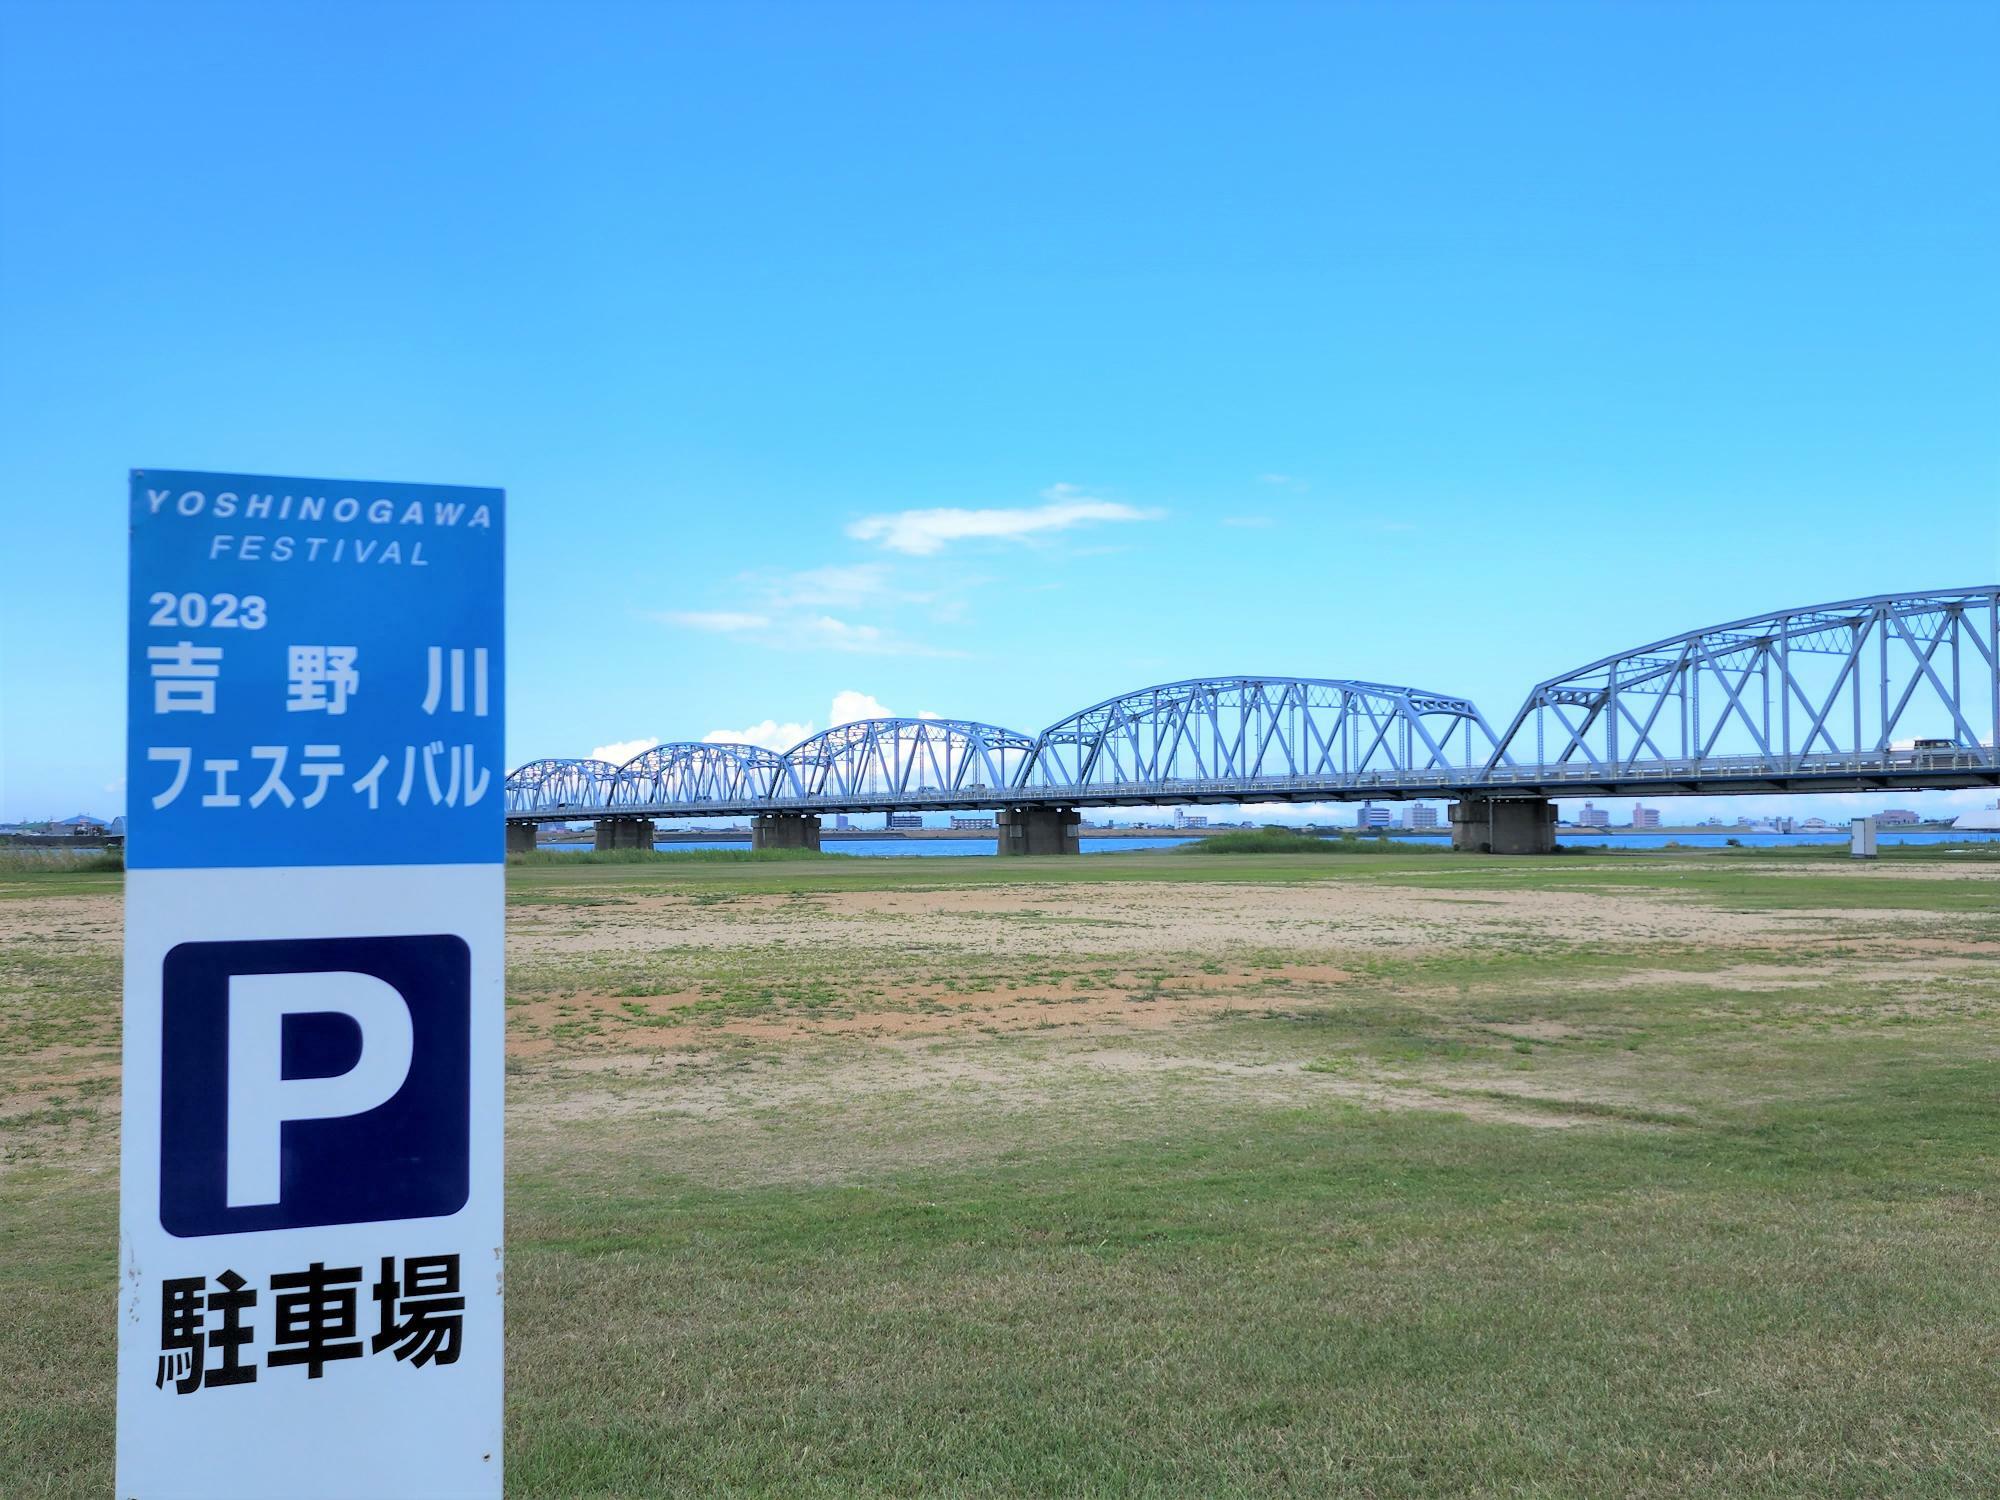 「吉野川フェスティバル 2023」の駐車場と駐車場の看板。